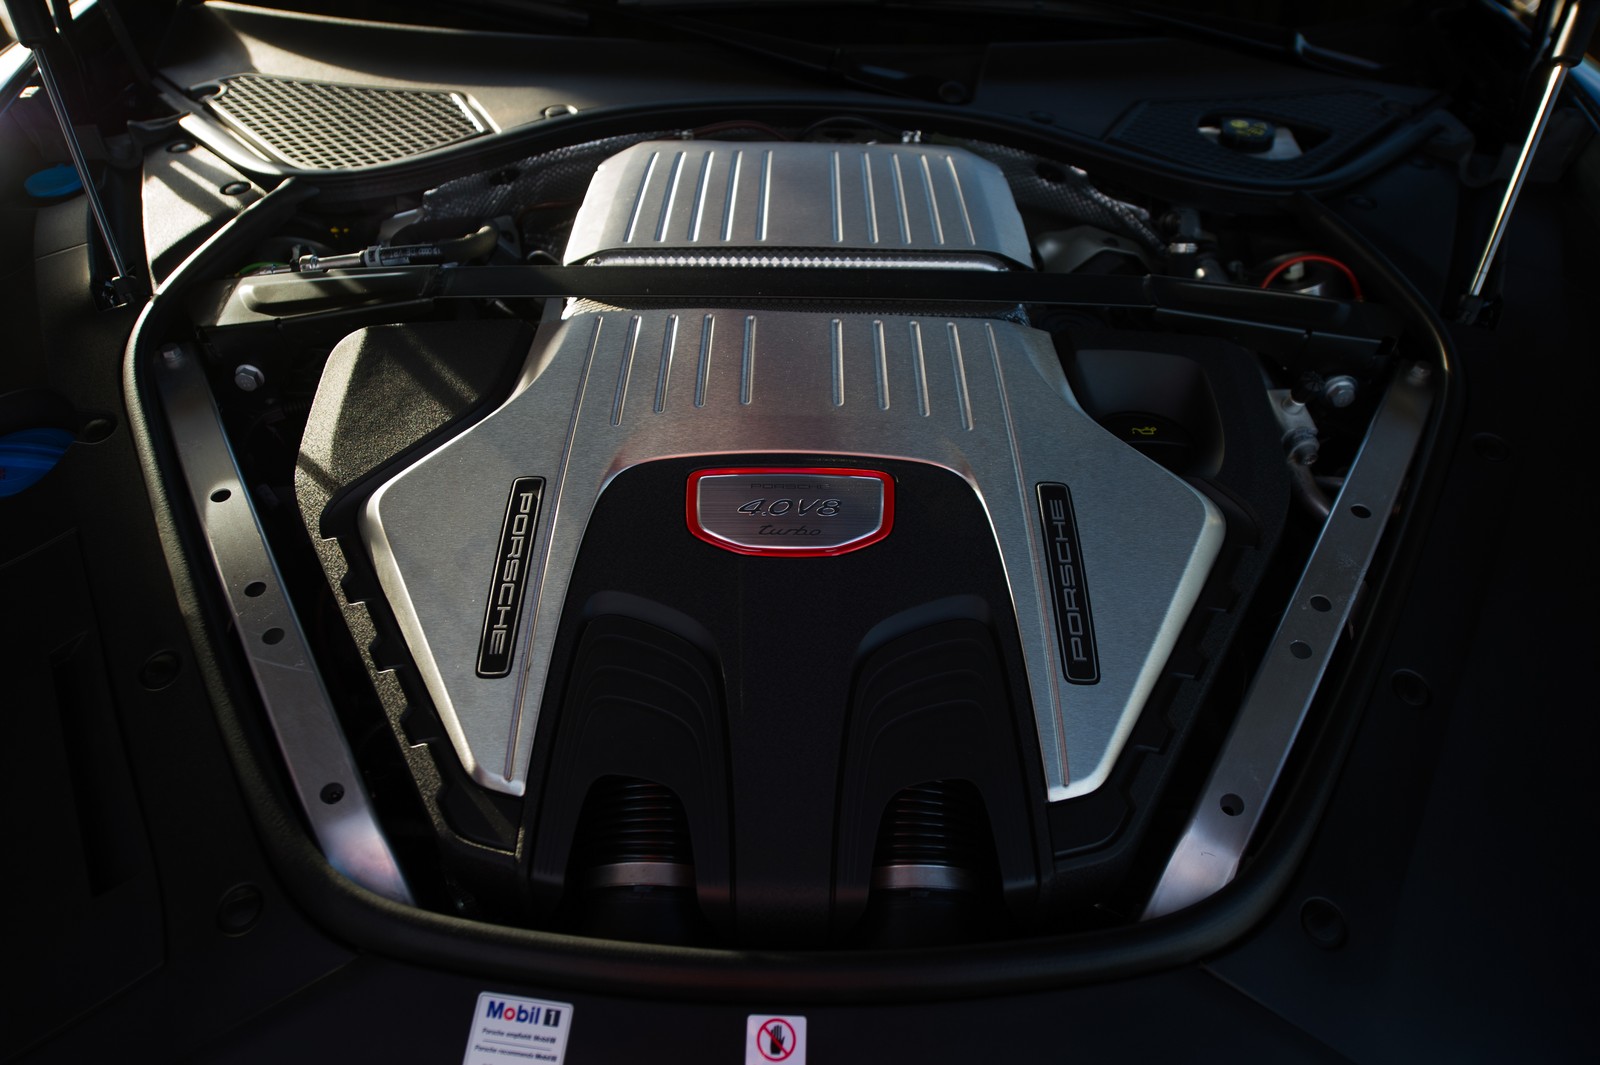 Motor V8 do Porsche Panamera desenvolve 550 cv (Foto: Divulgação/Porsche)